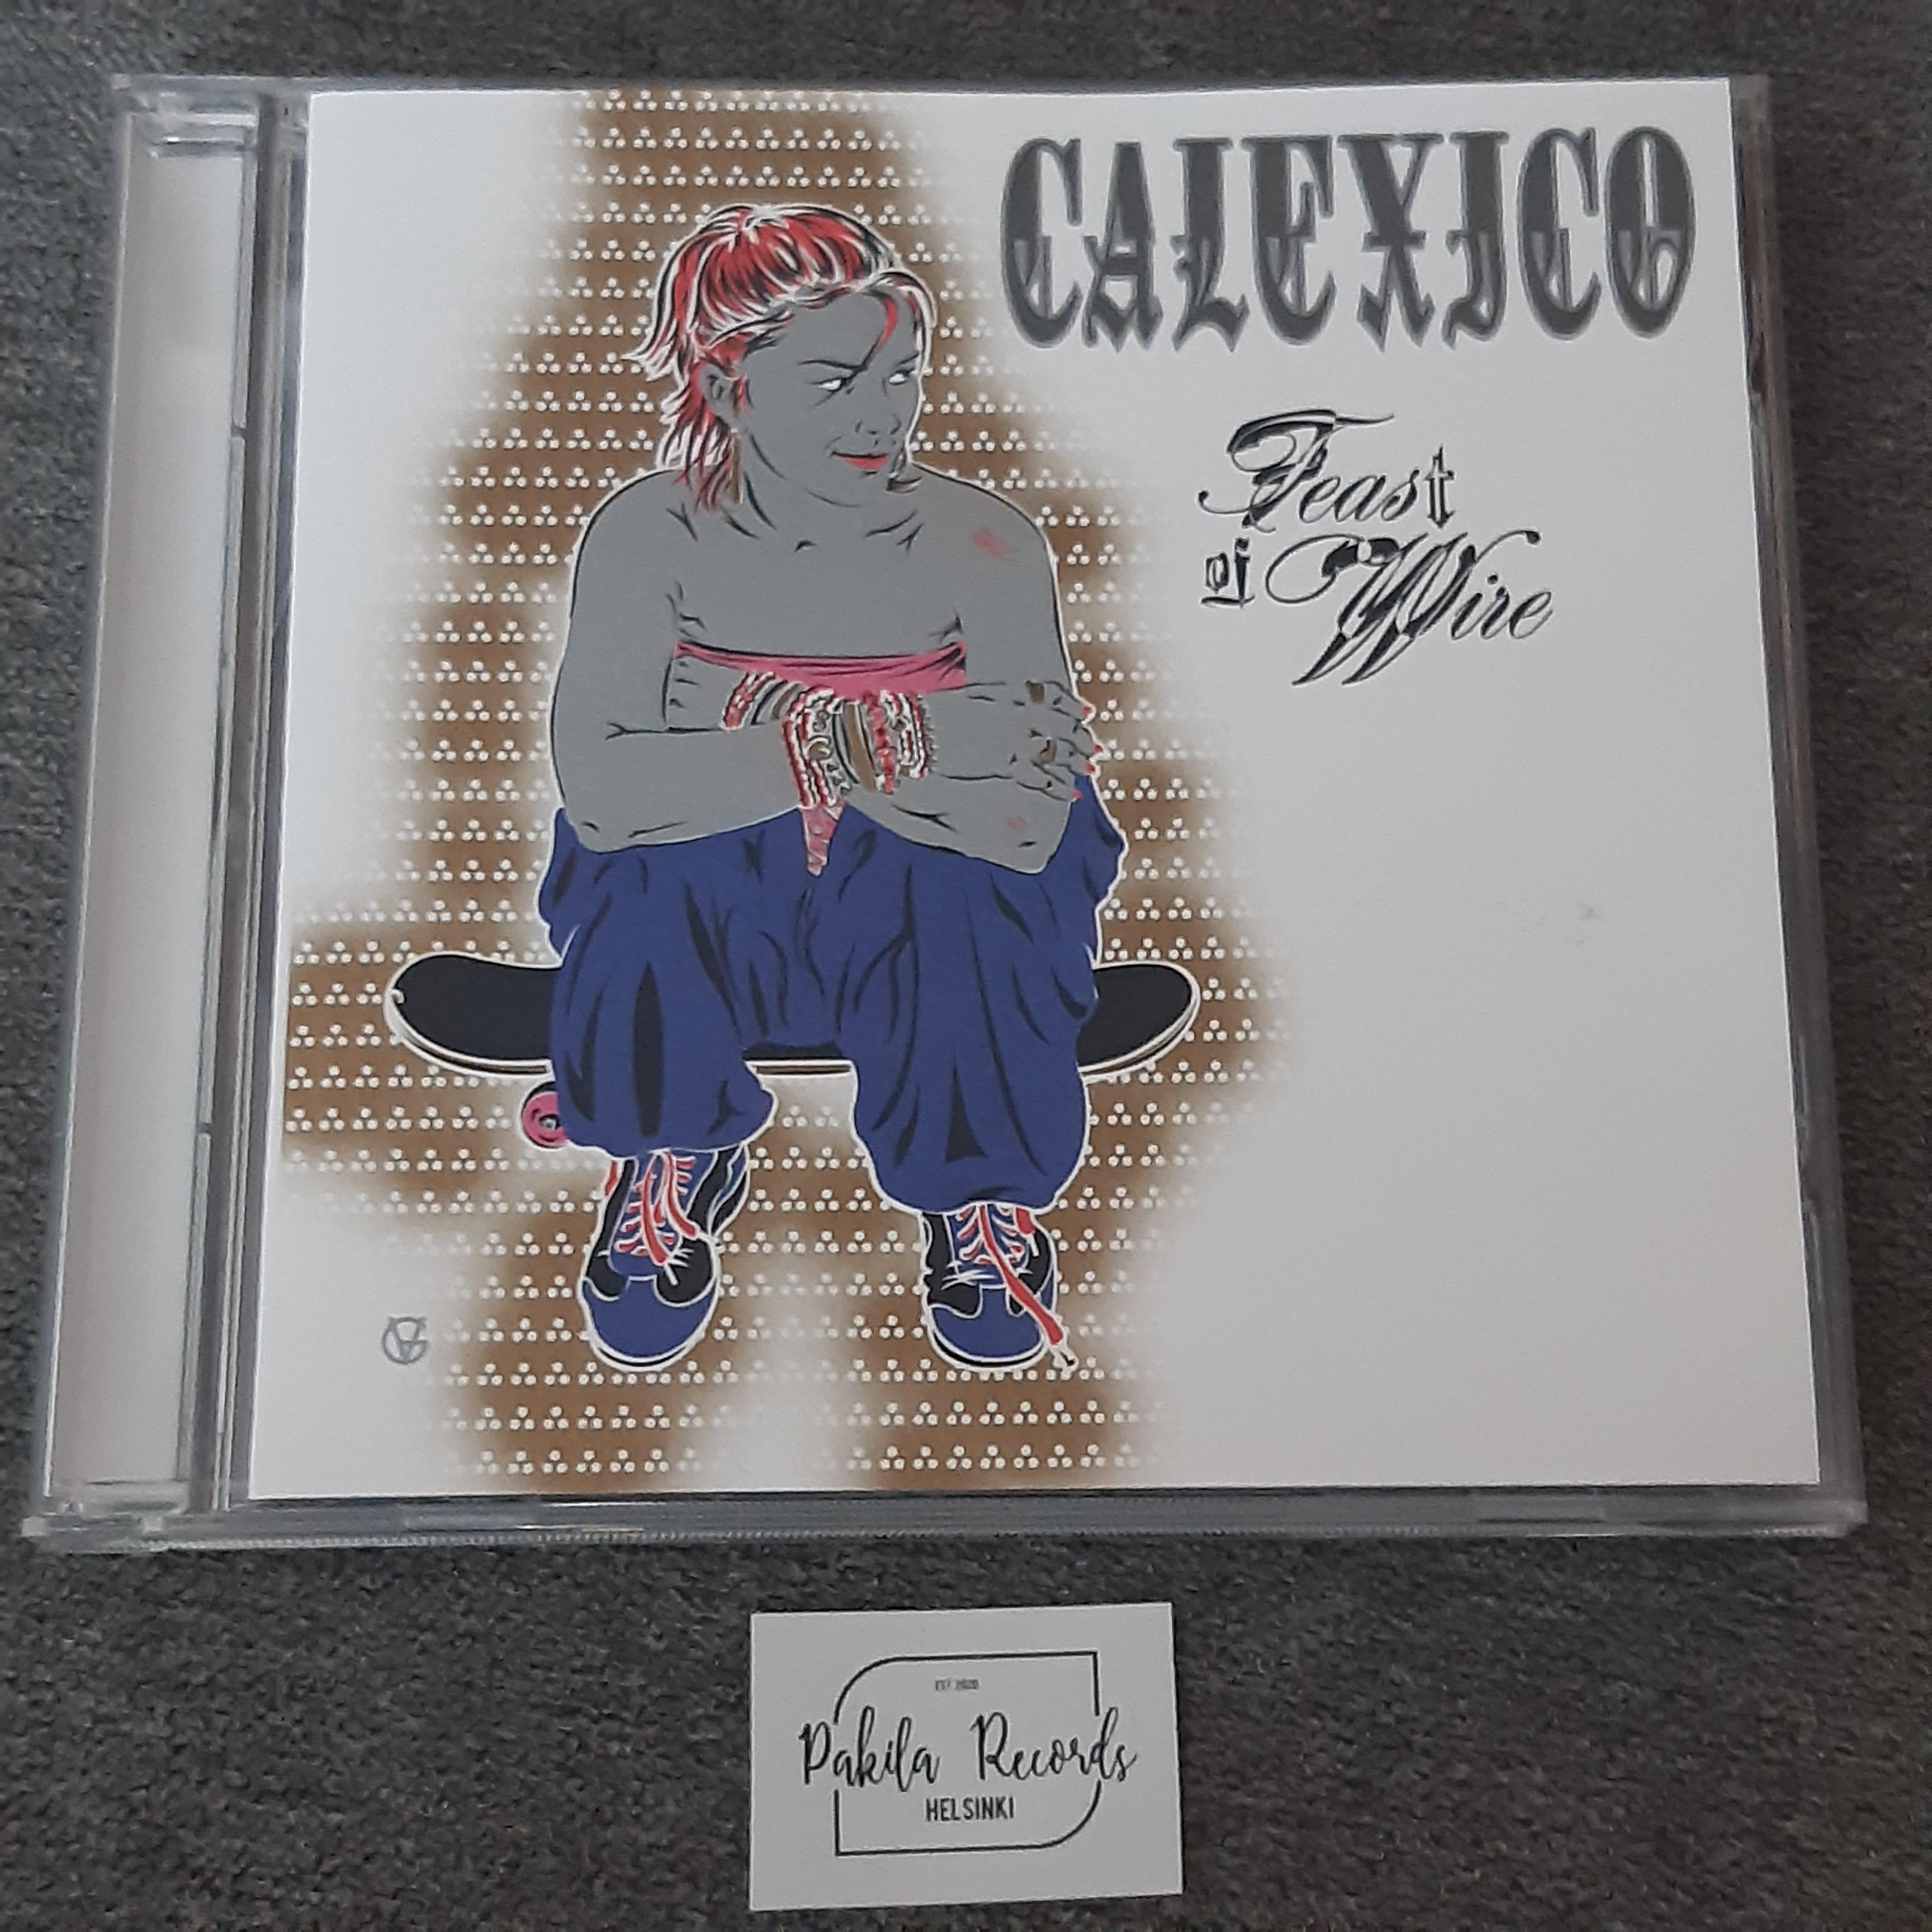 Calexico - Feast Of Fire - CD (käytetty)